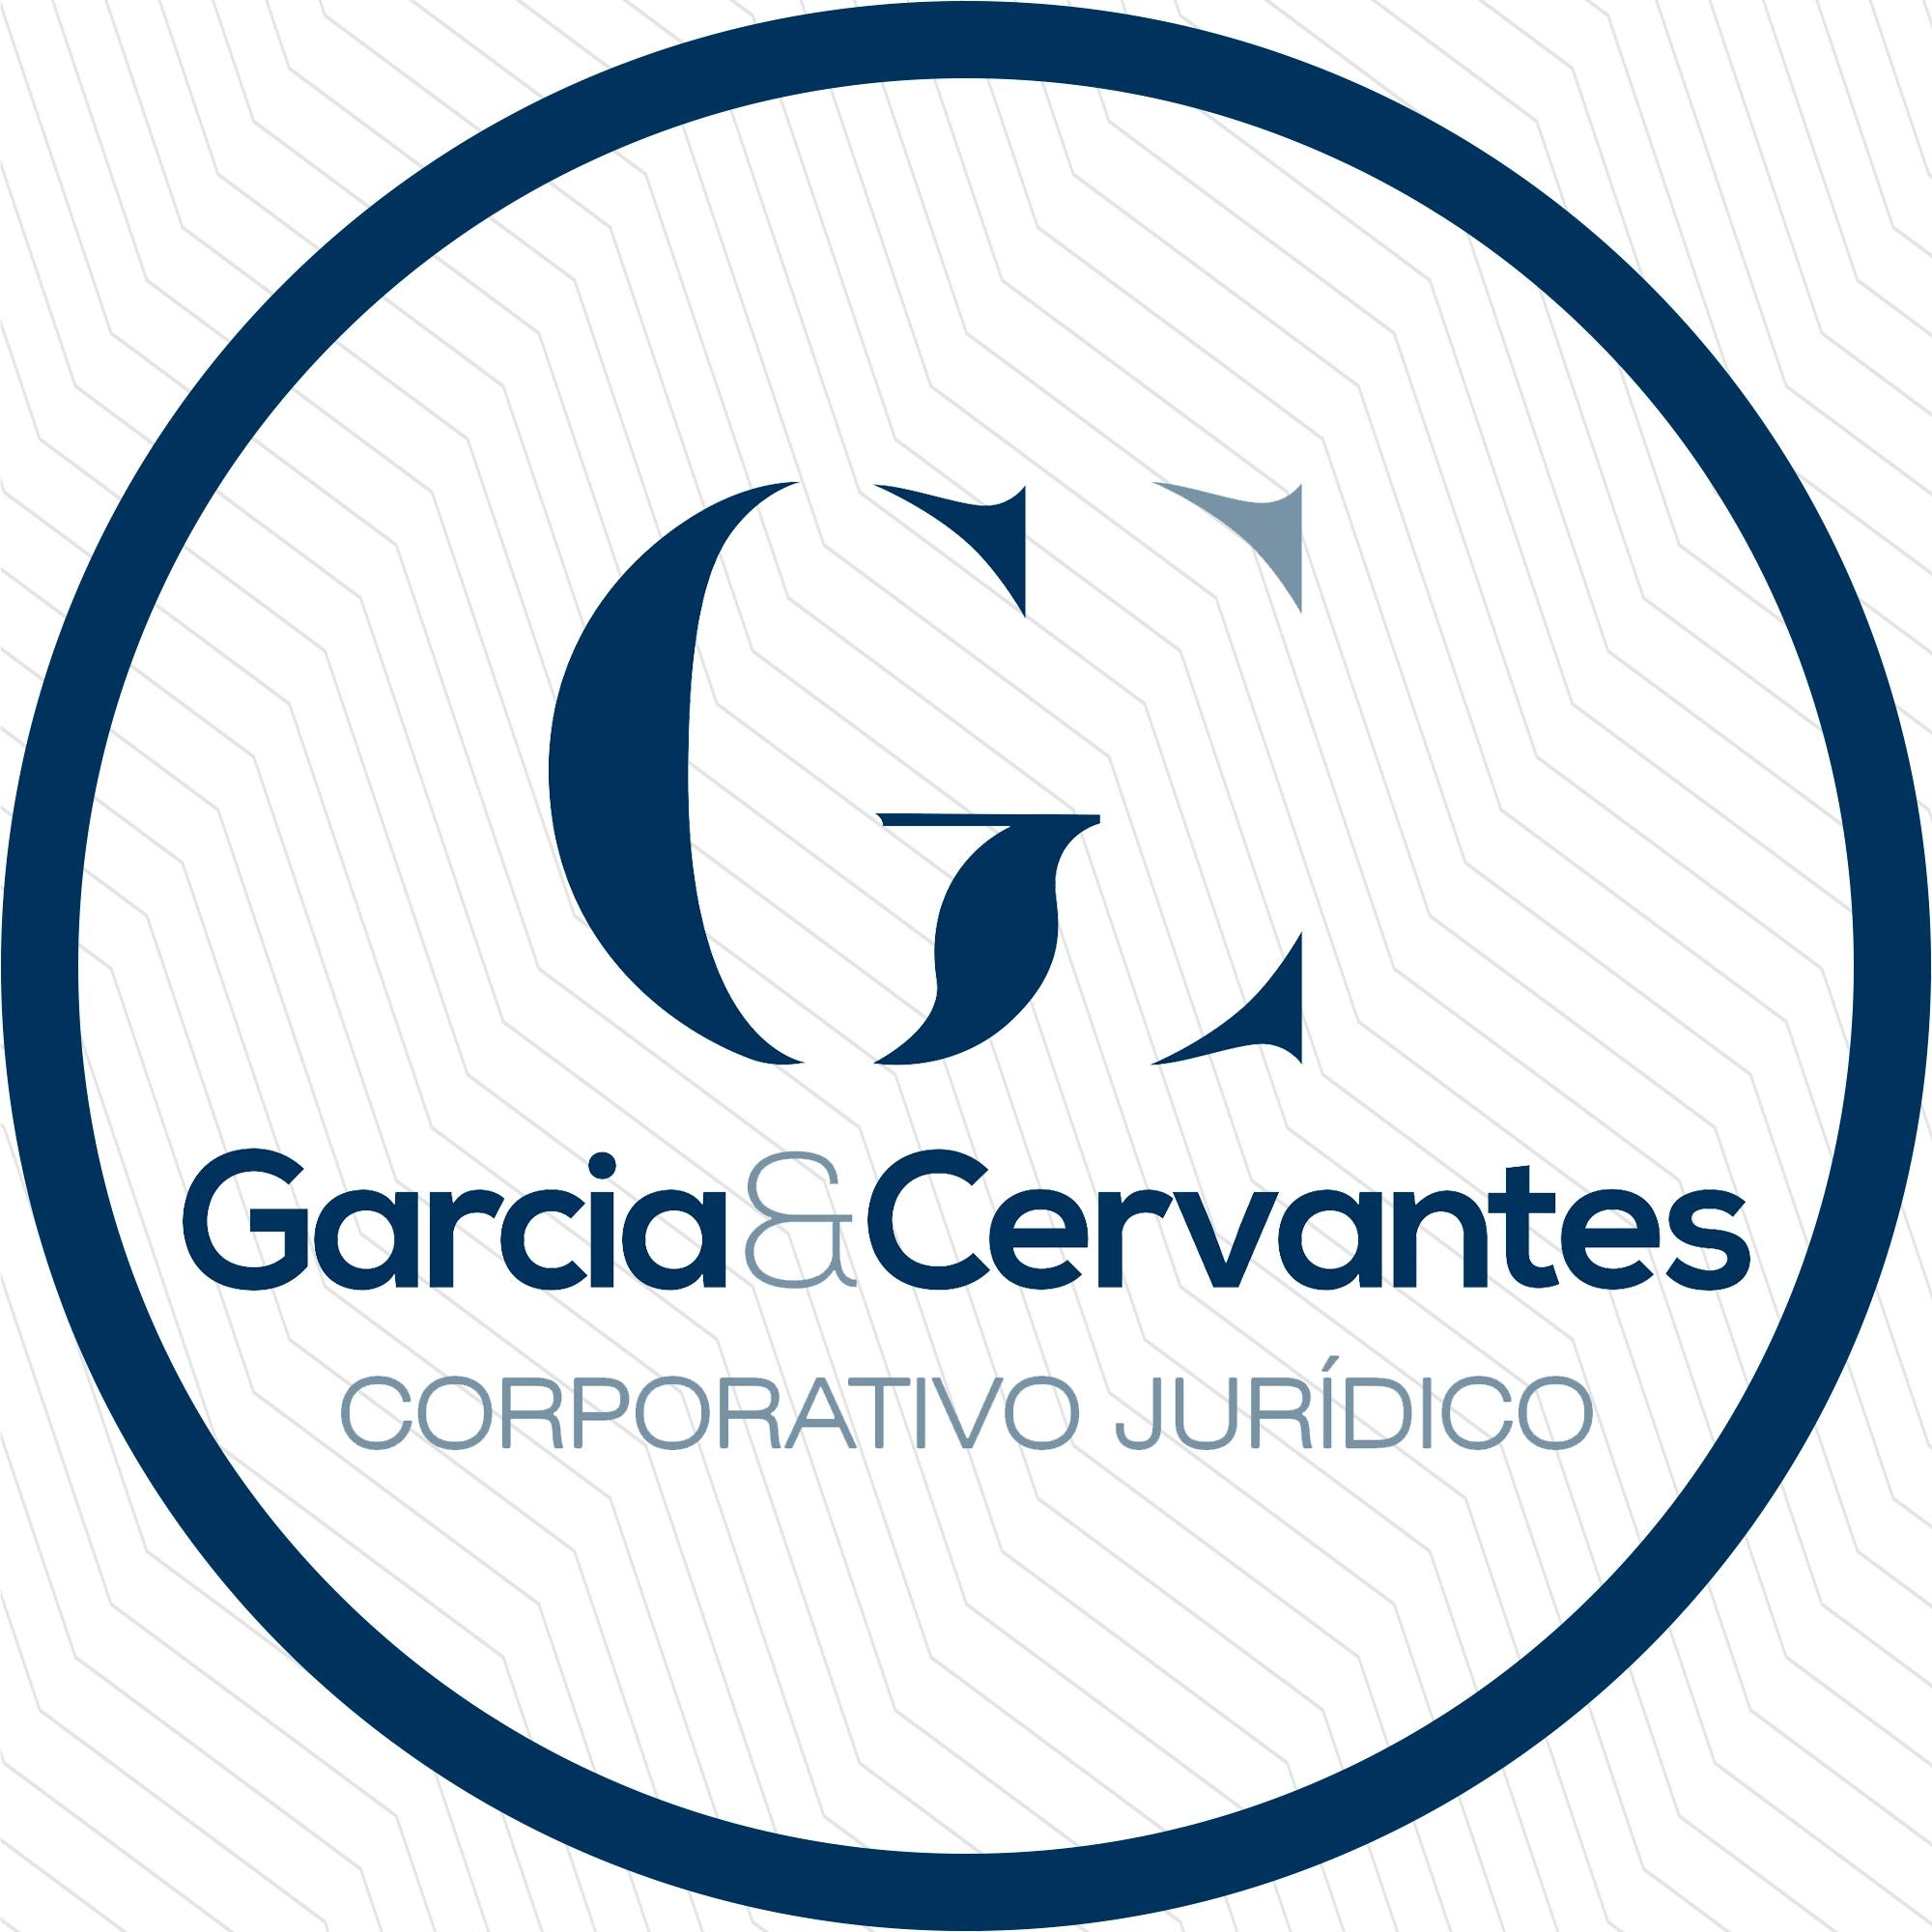 CORPORATIVO JURIDICO ASISTENTES Y ASESORES LEGALES